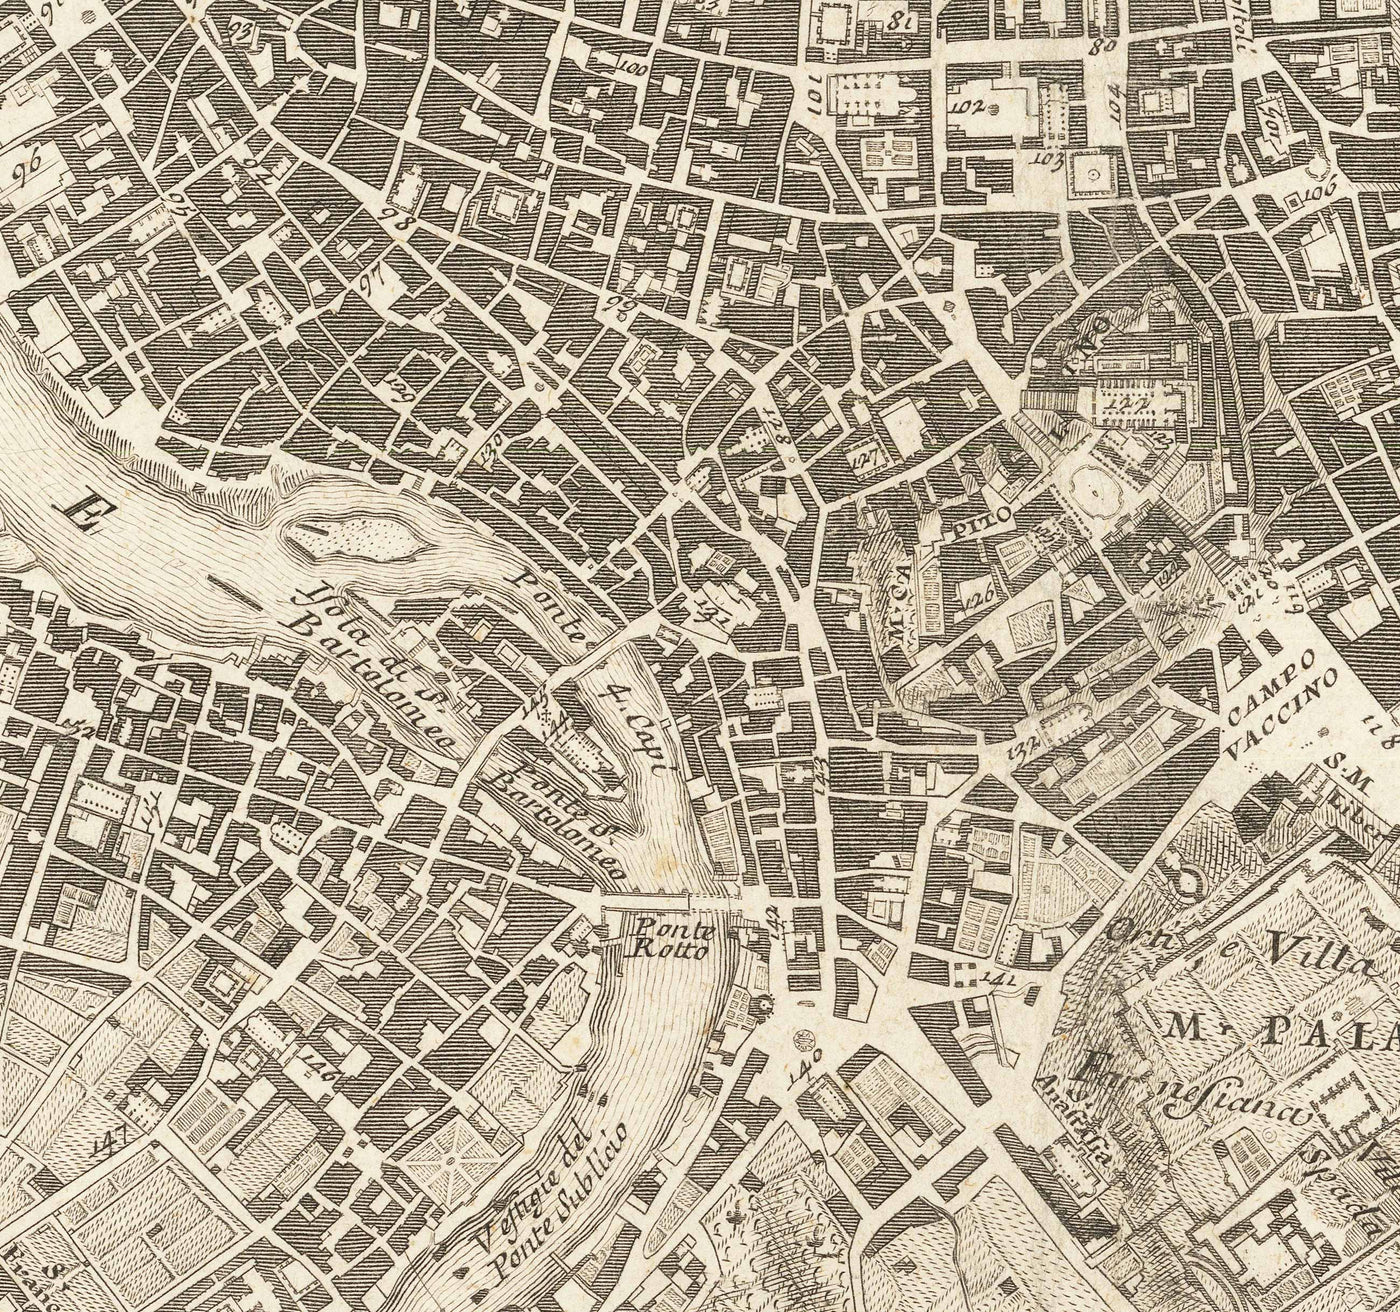 Raro mapa antiguo de Roma, Italia, por Nolli & Piranesi, 1748 - Vaticano, Basílica de San Pedro, Fuente de Trevi, Coliseo